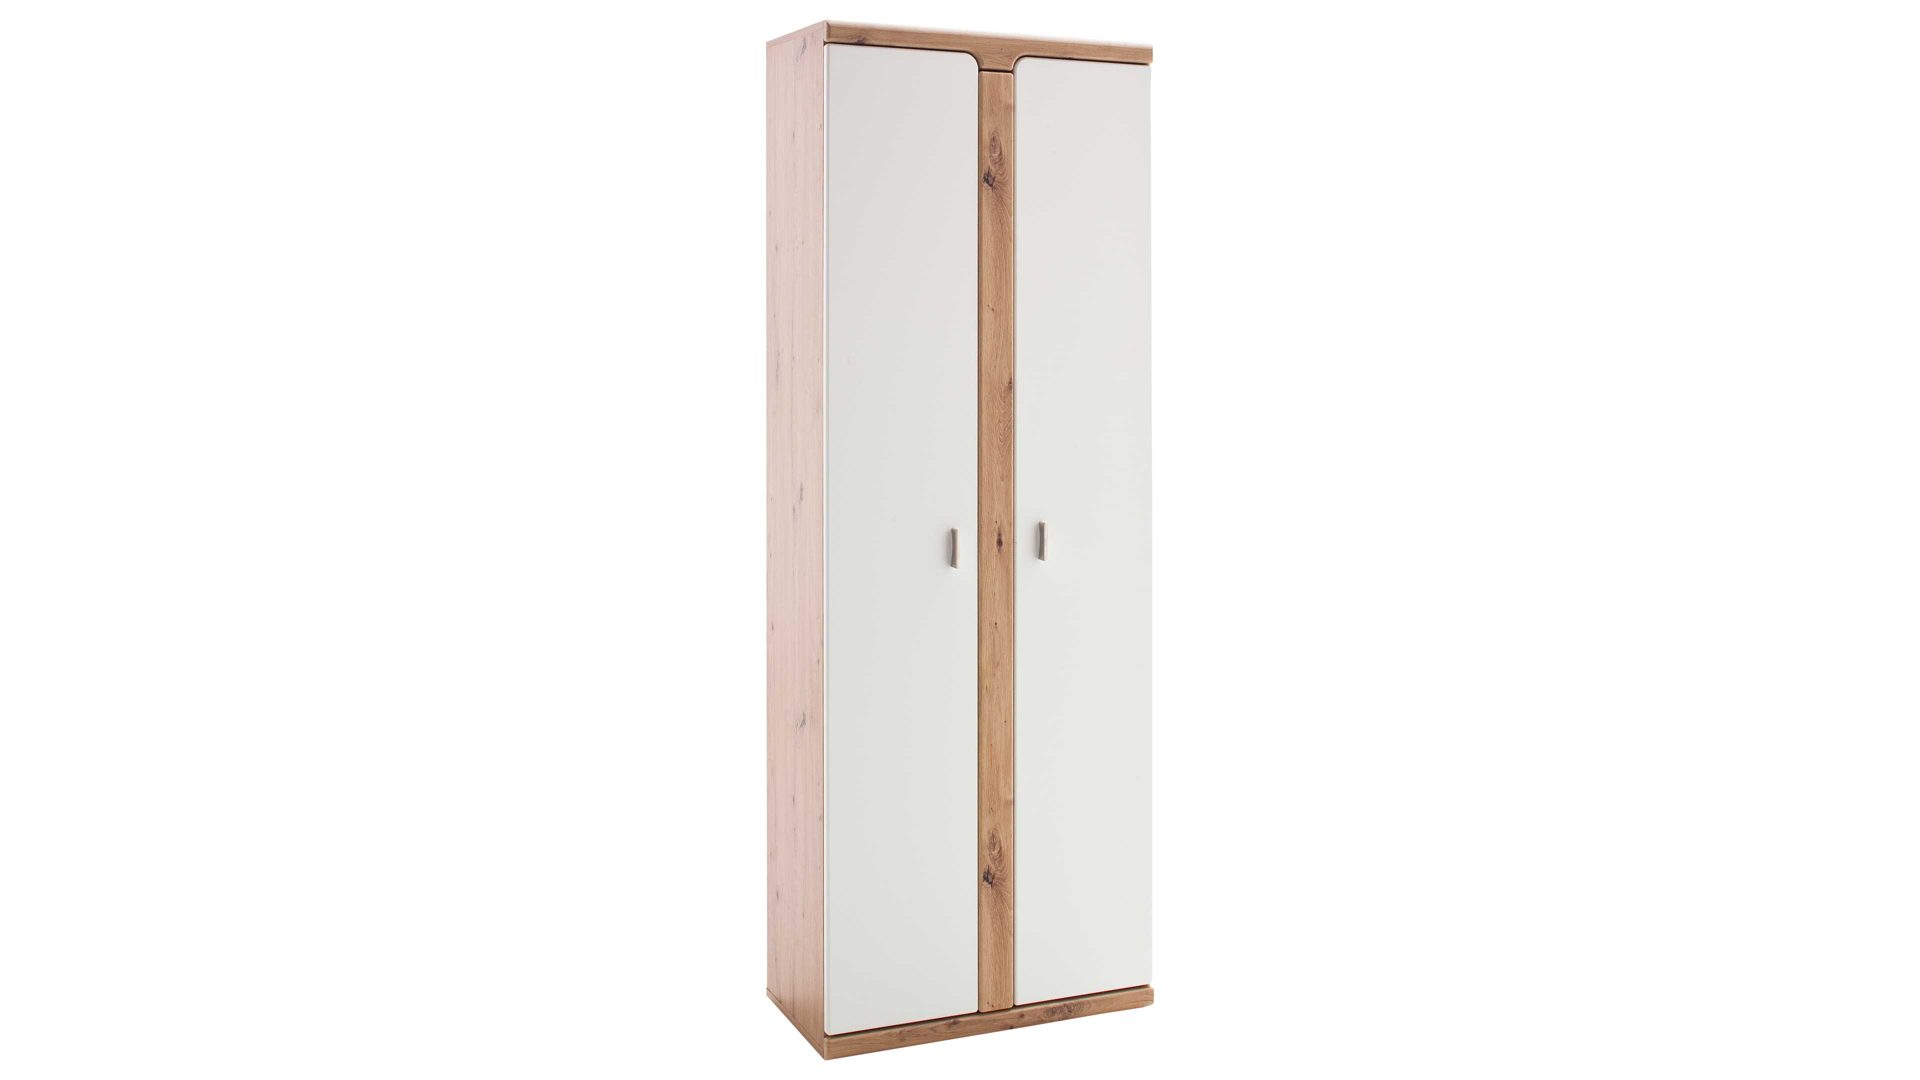 Garderobenschrank Mca furniture aus Holz in Weiß Garderobenschrank Torino Weiß & Balkeneiche – zwei Türen